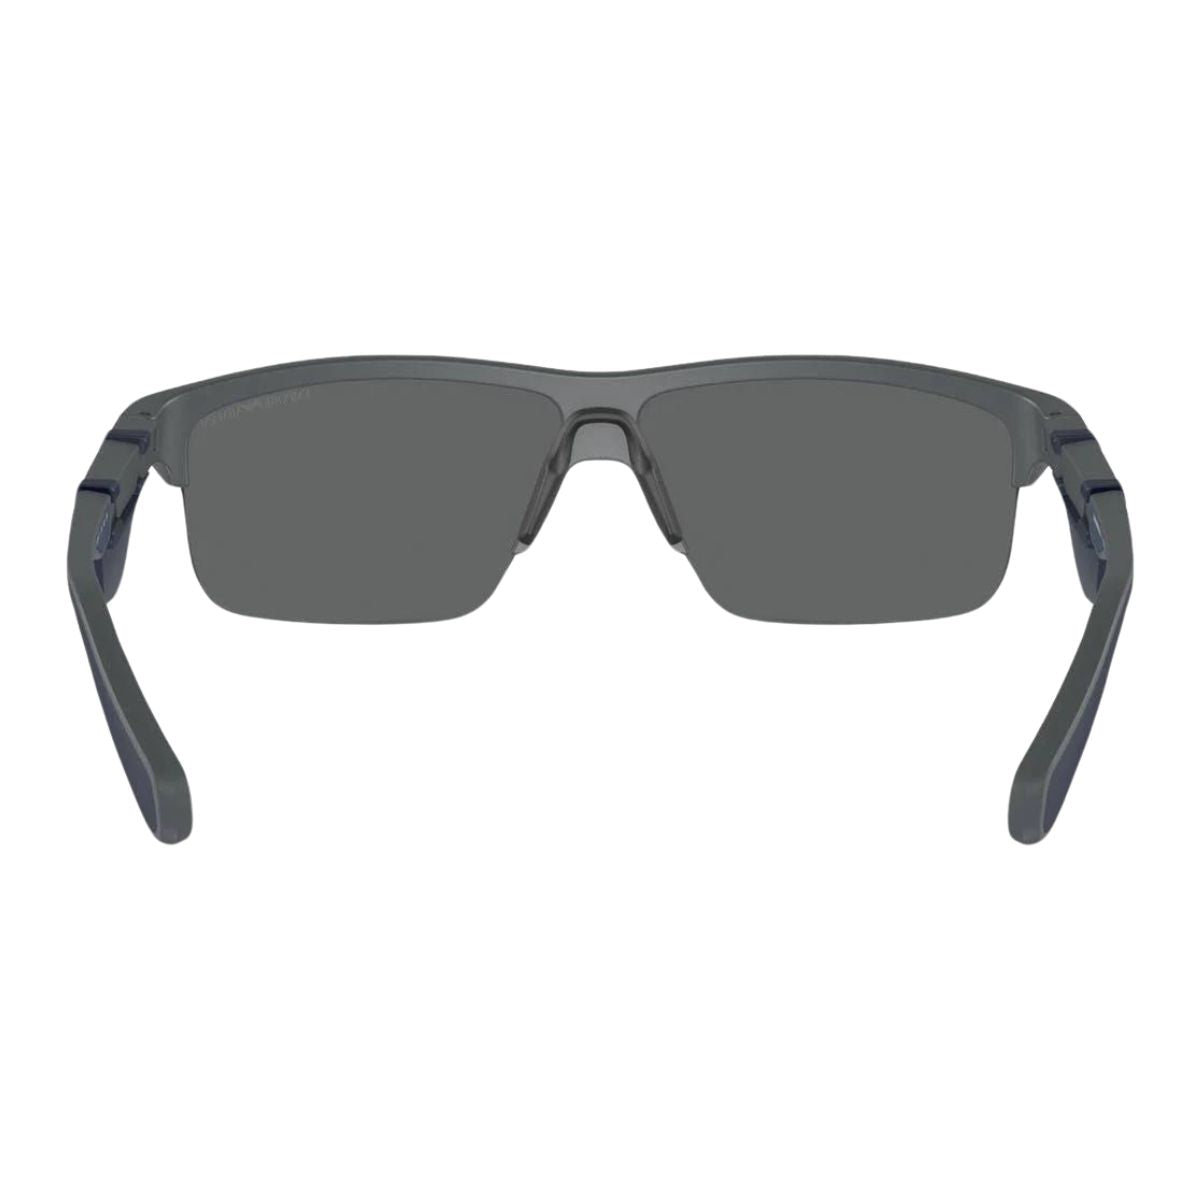 "Buy Trending Rectangle UV Protection Sunglasses For Men's | Optorium"